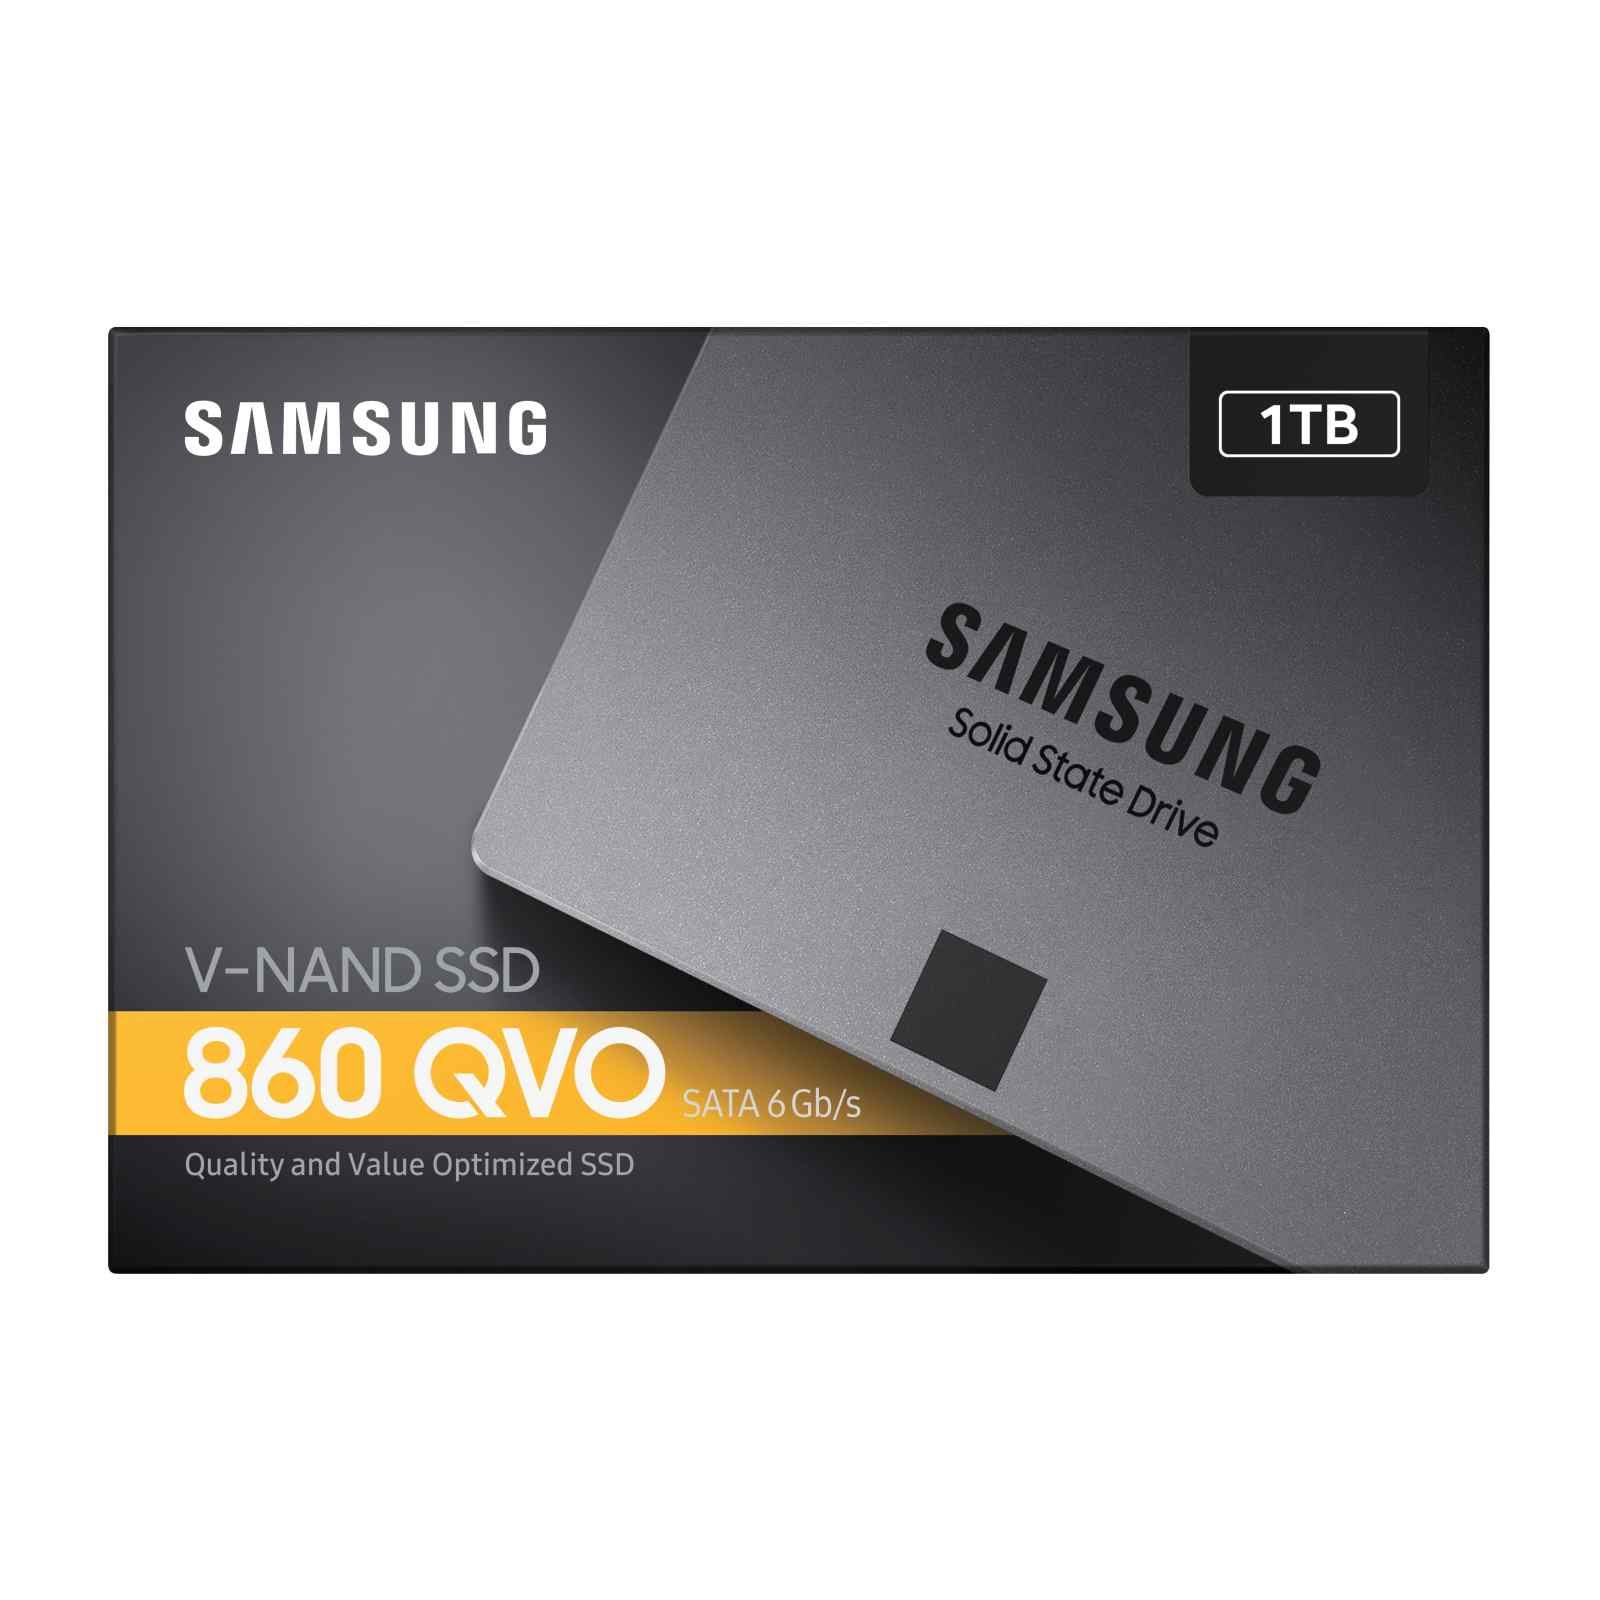 Samsung 860 QVO V-NAND 2.5 SSD 1TB – Game Hub